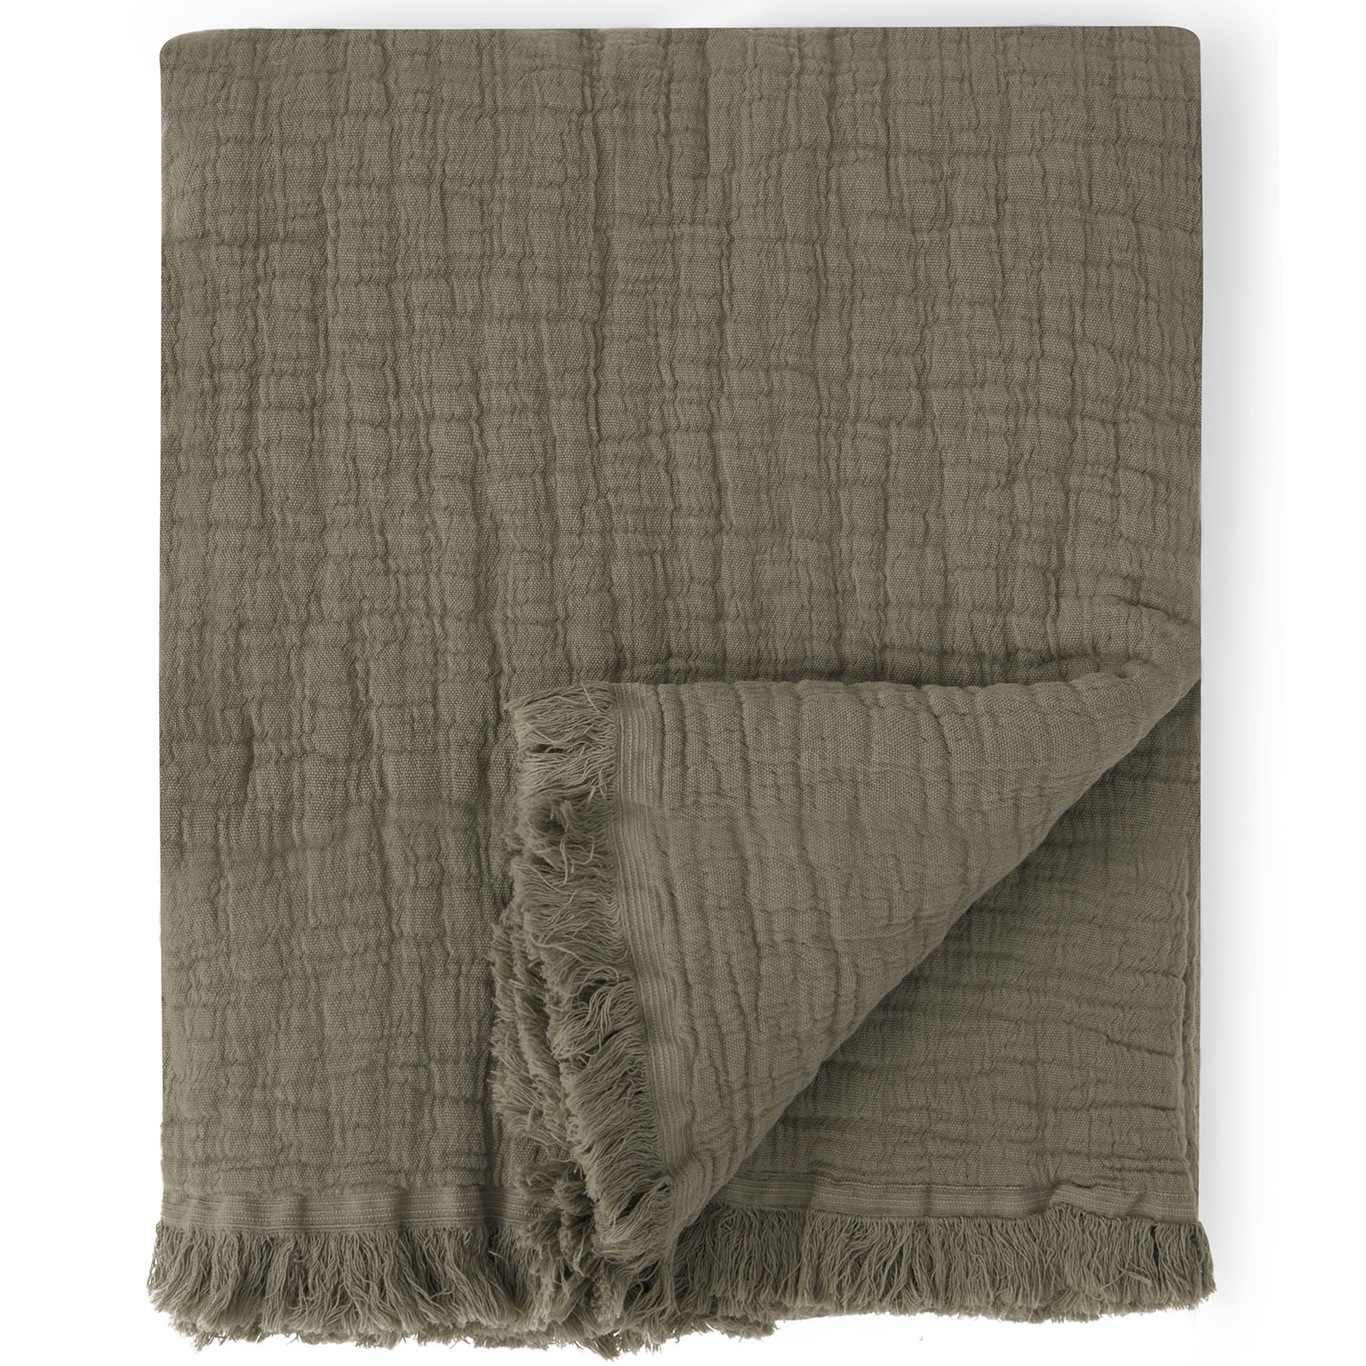 Geranium Blanket, 130x170 cm